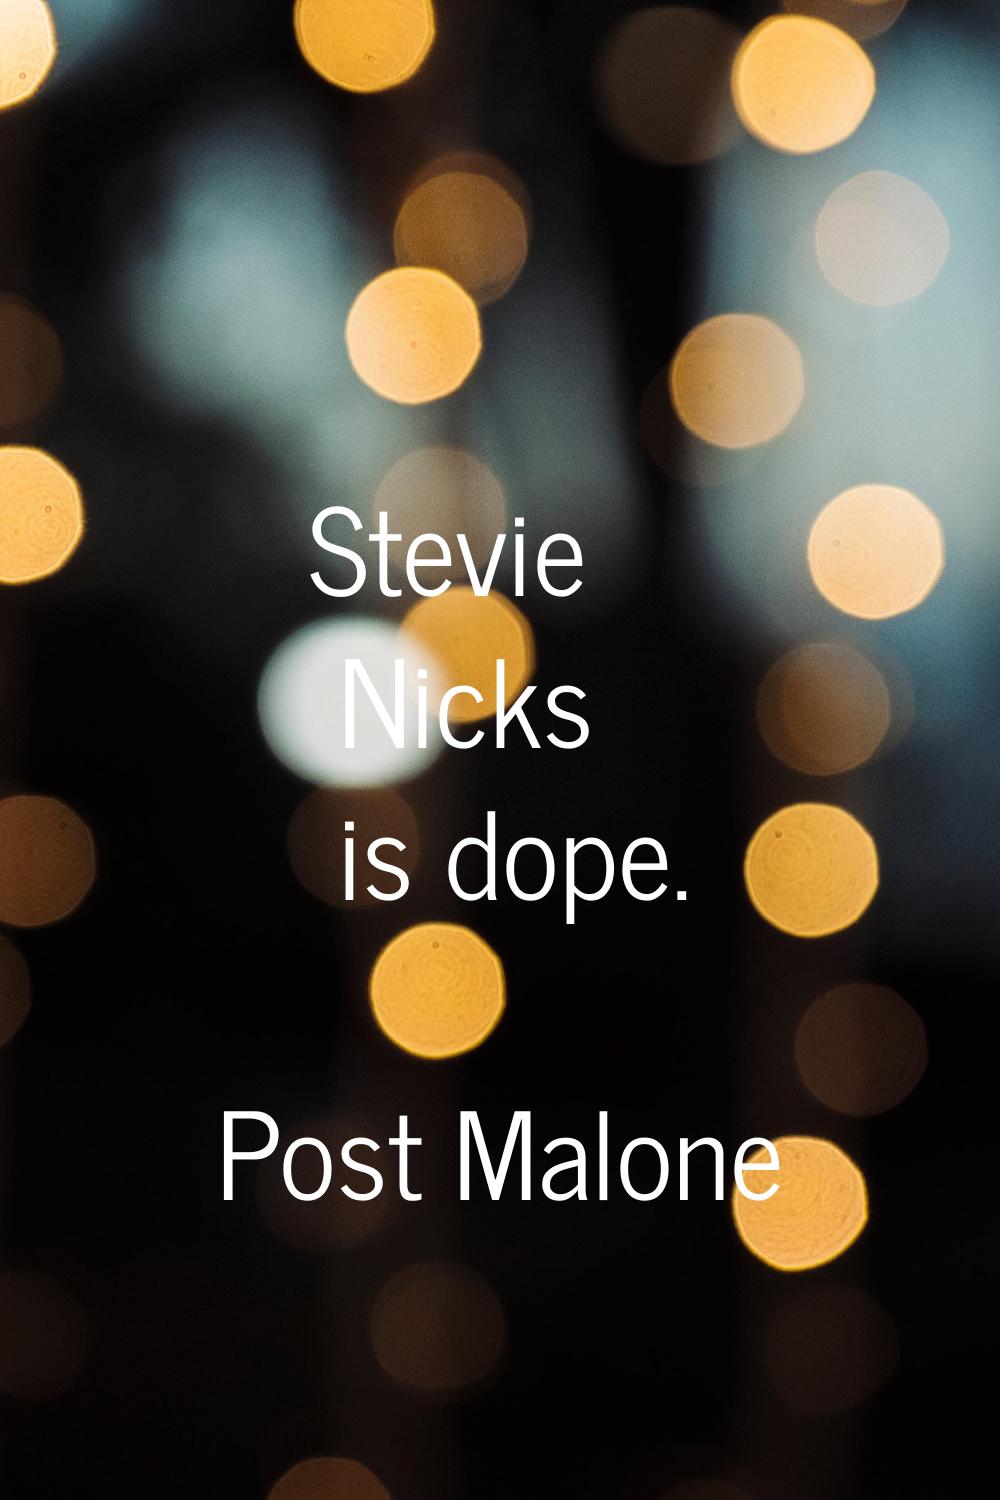 Stevie Nicks is dope.